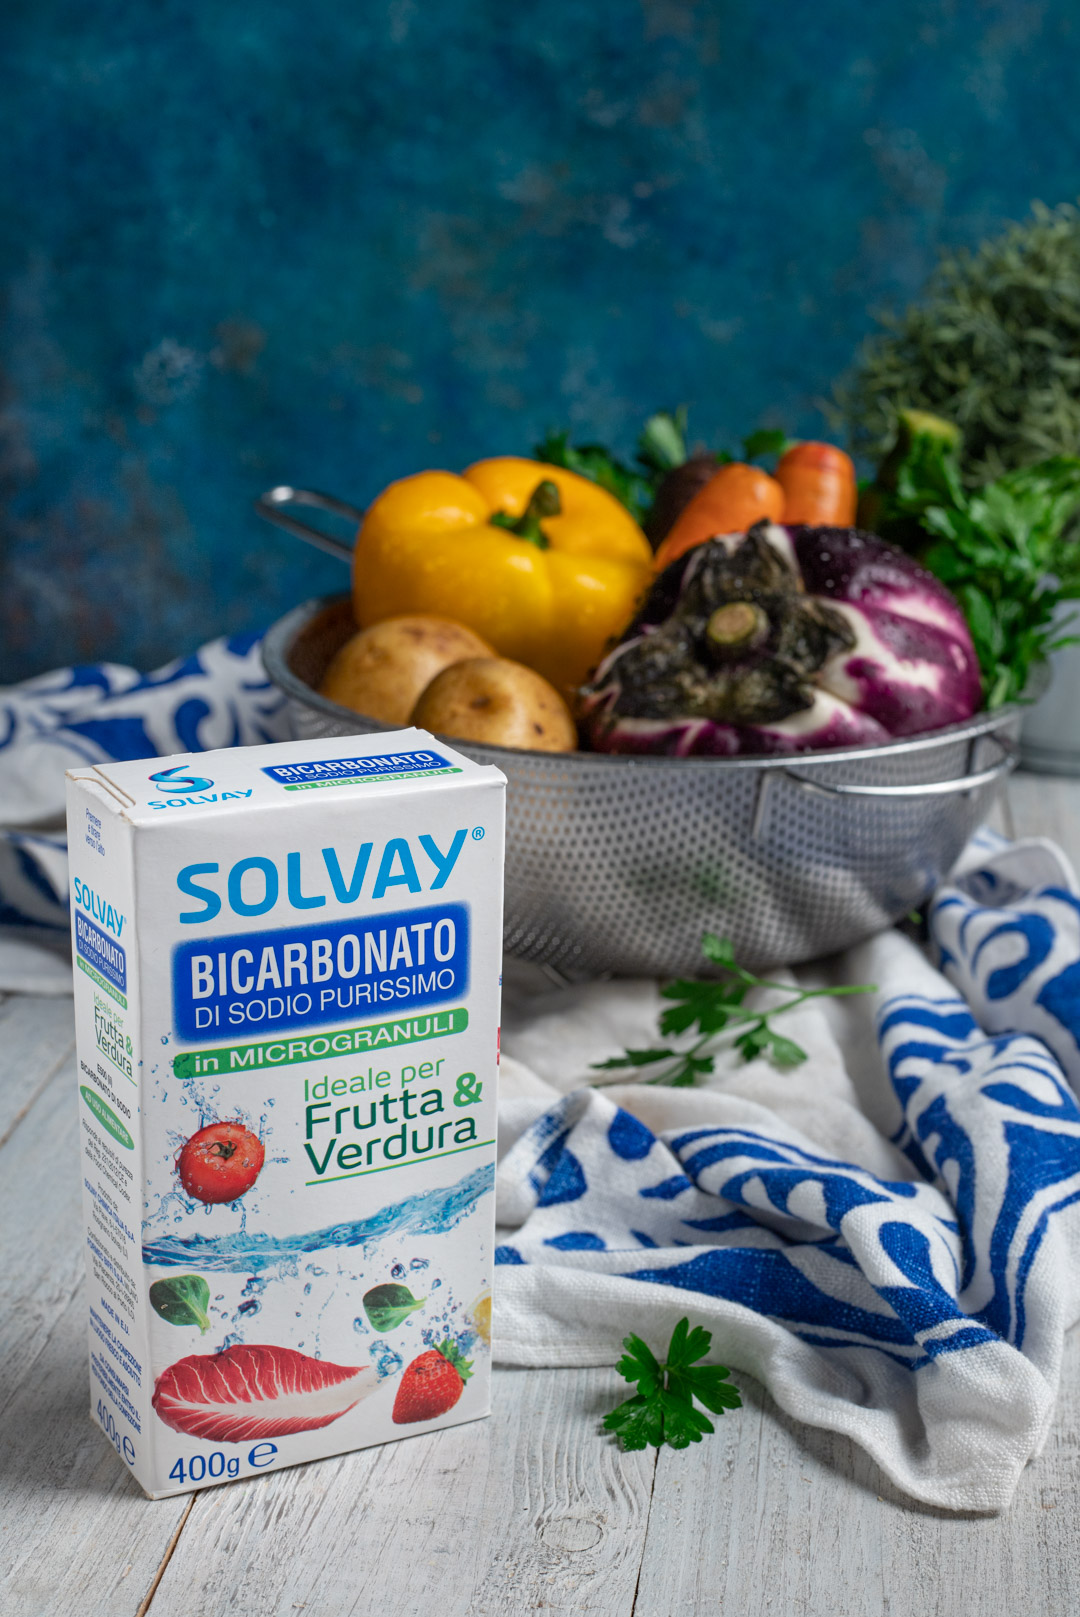 Nuove ricette con la buccia di frutta e verdura  Le proposte di 5 Food influencer per Bicarbonato Solvay®